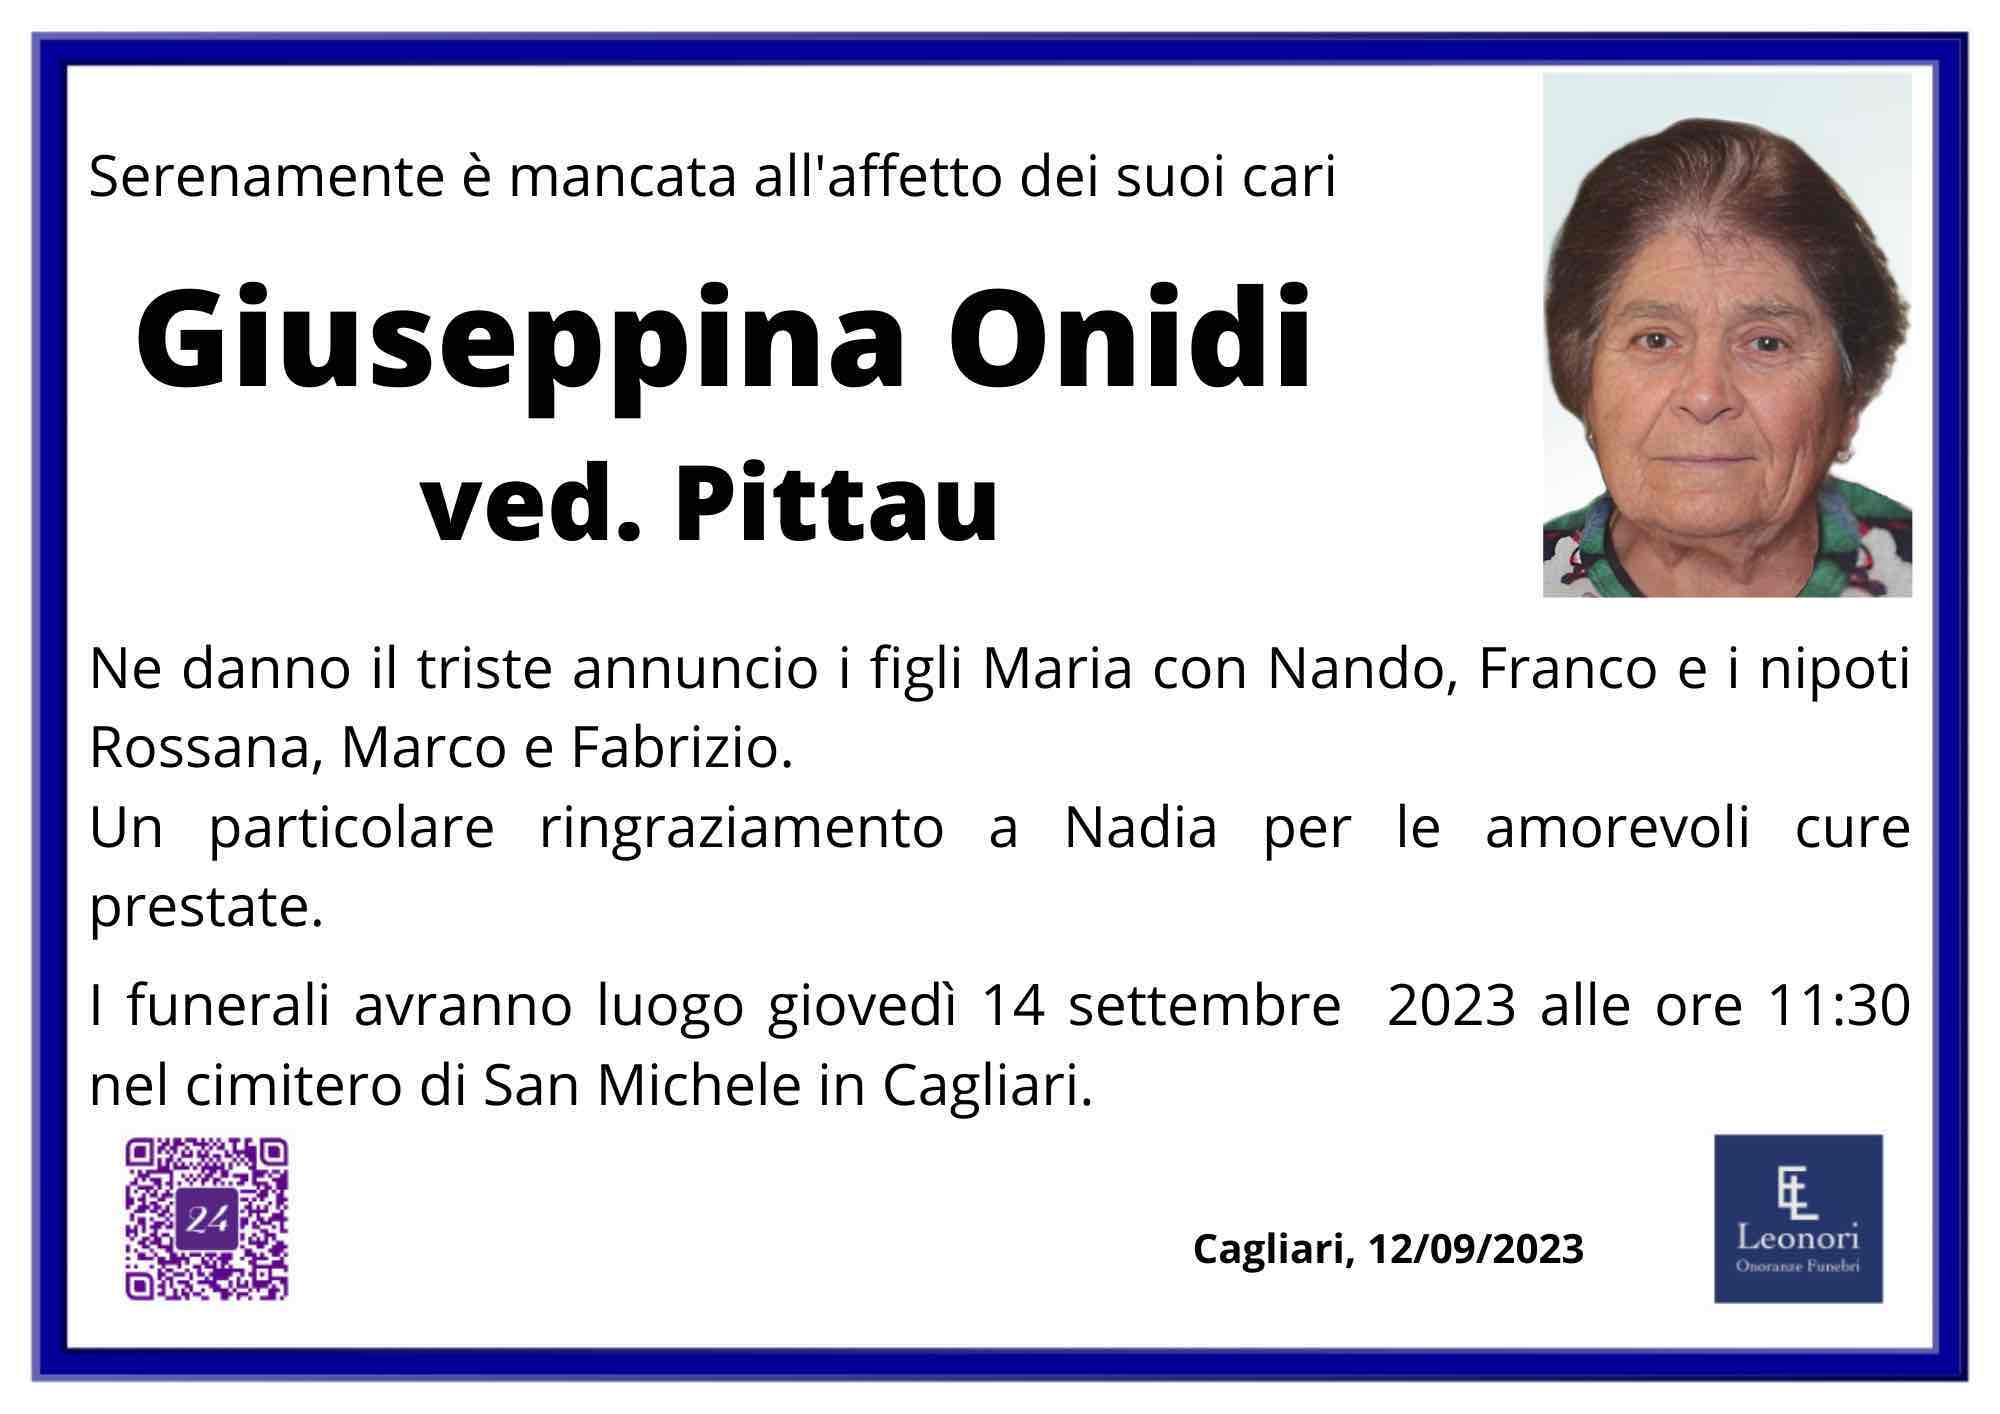 Giuseppina Onidi